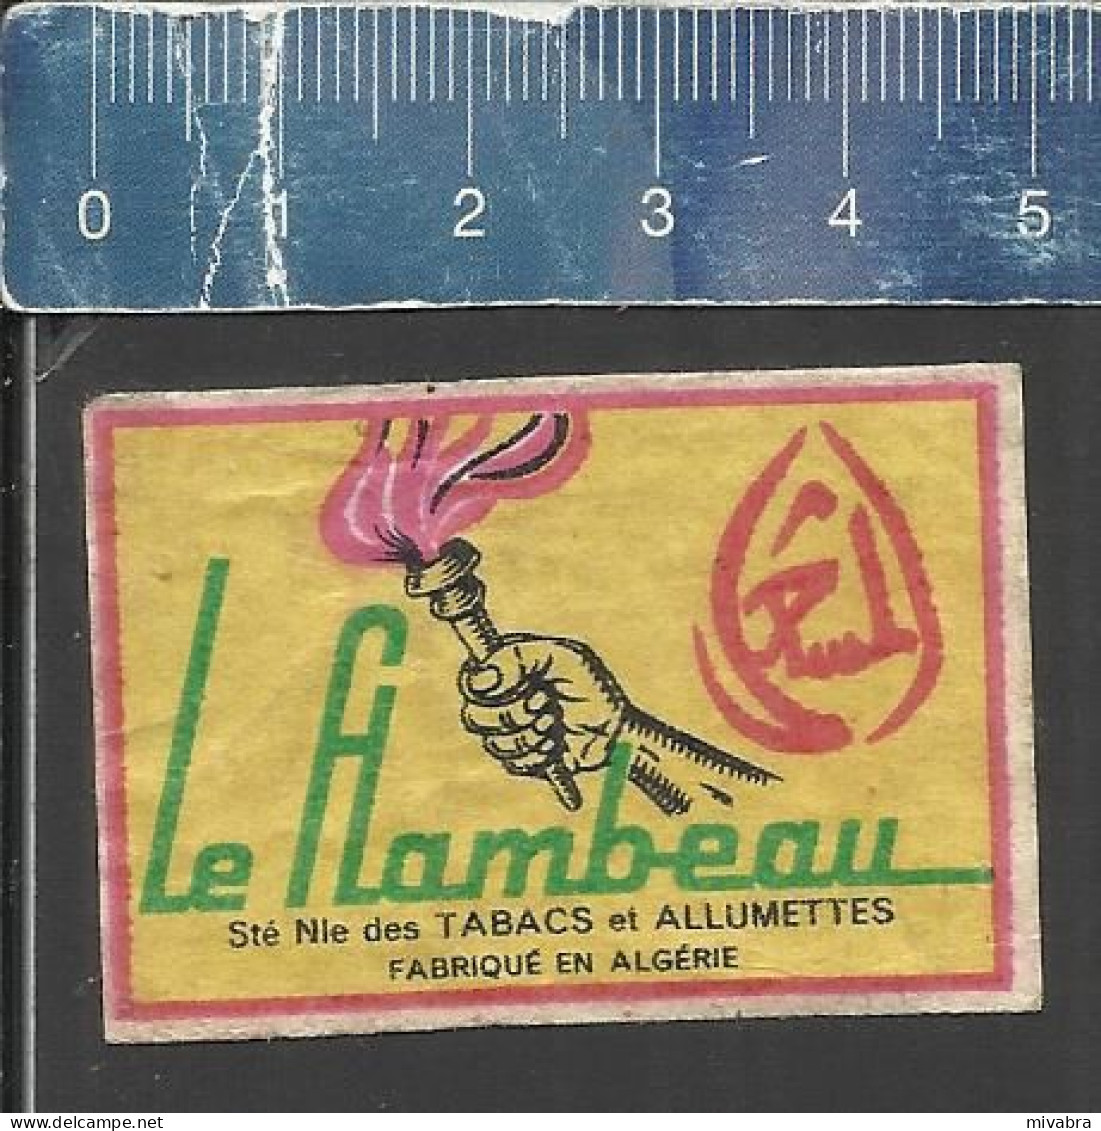 LE FLAMBEAU ( TORCH FAKKEL ) - OLD MATCHBOX LABEL ALGERIA - Zündholzschachteletiketten